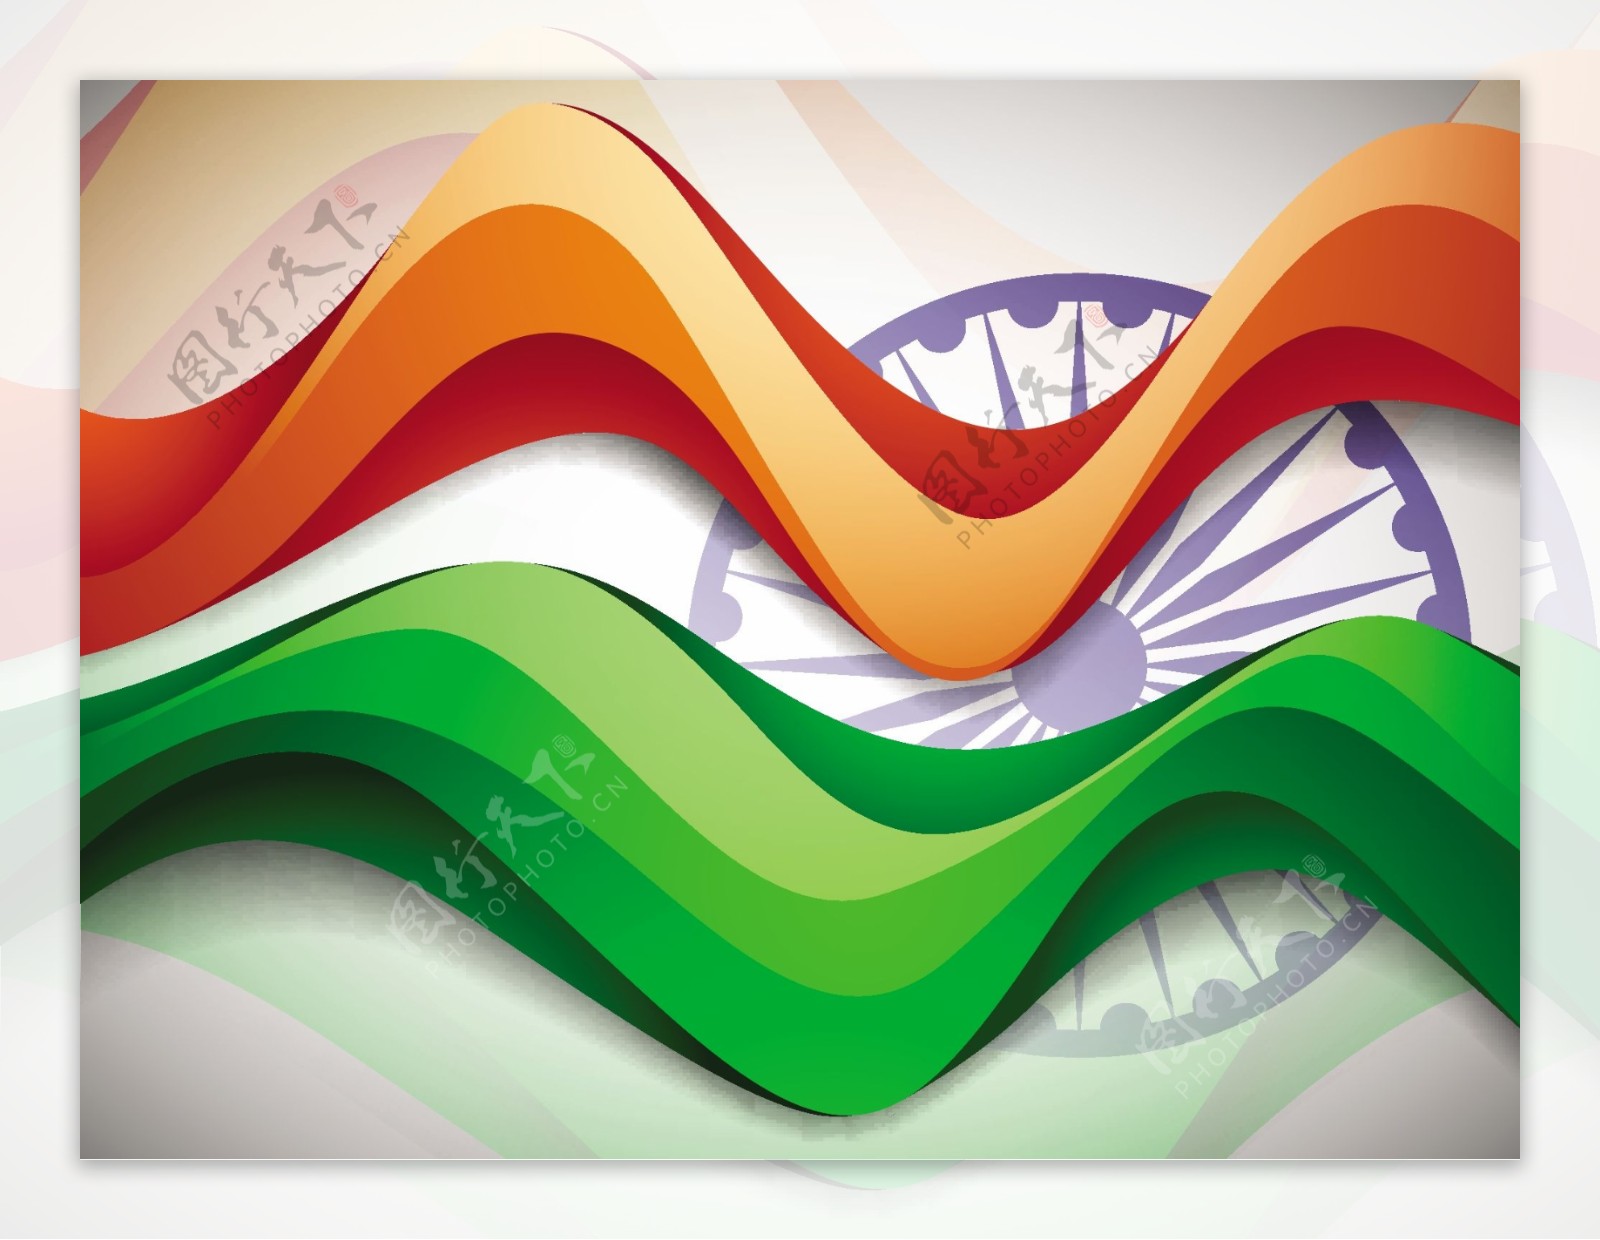 印度国旗背景波模式